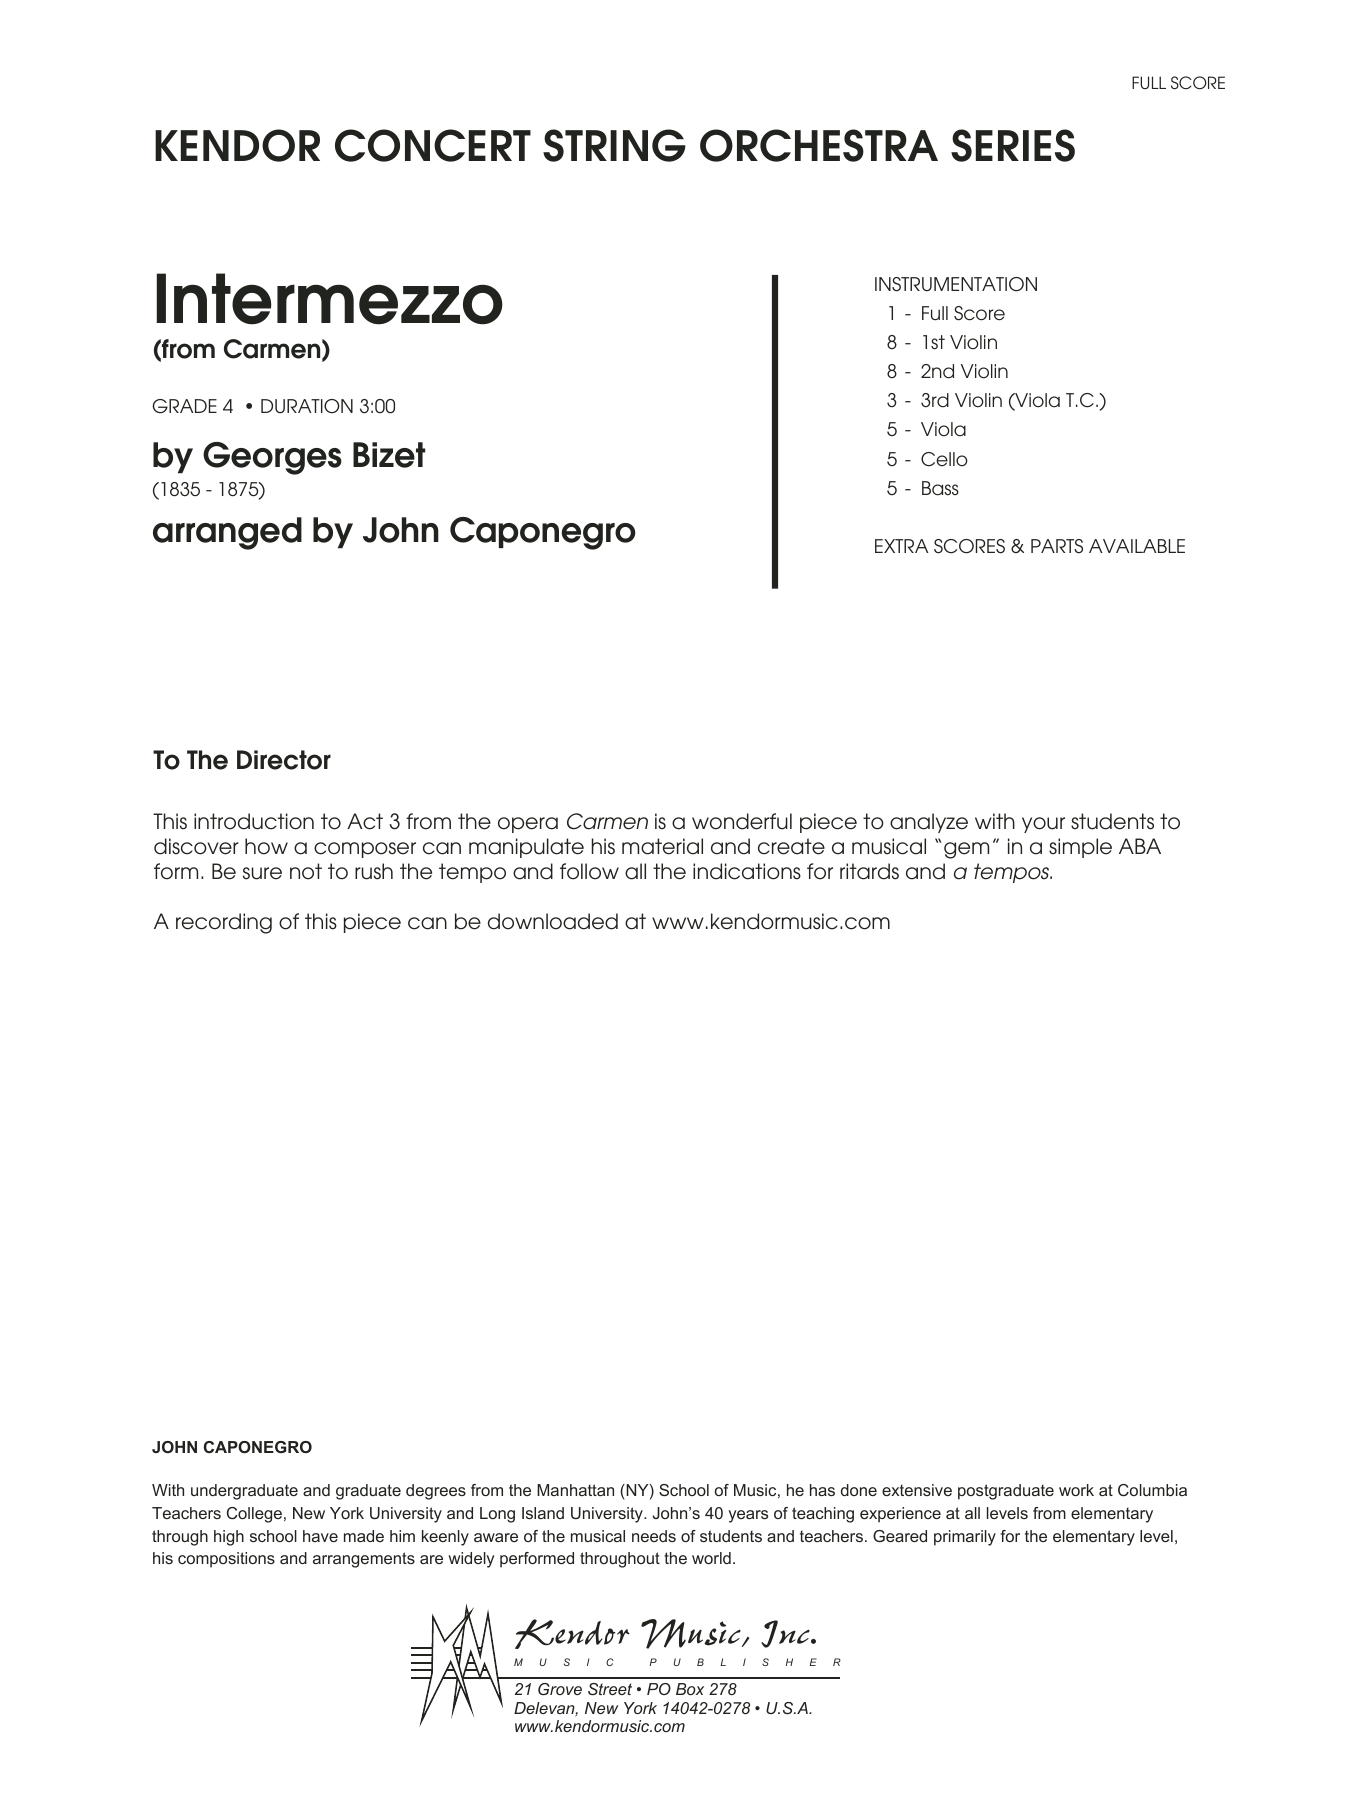 Intermezzo (from Carmen) - Full Score (Orchestra) von Caponegro